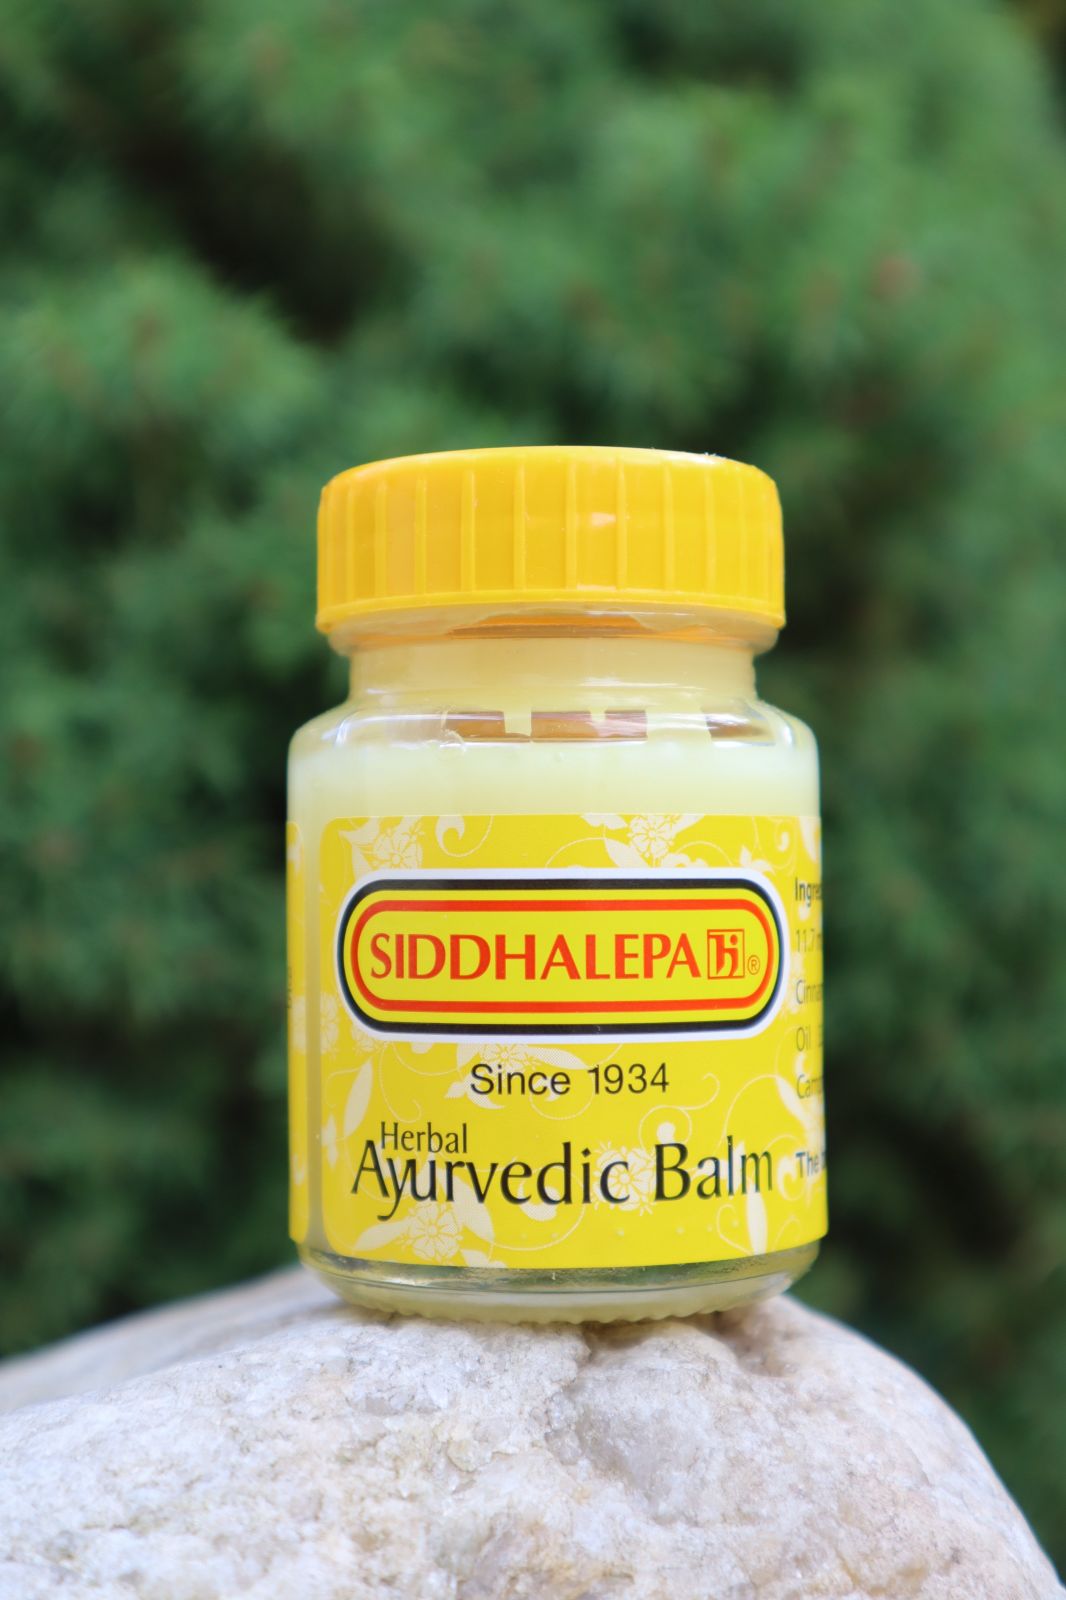 Ayurvédskej BYLINNÝ BALZAM Siddhalepa 25 g proti bolesti svalov, kĺbov, hlavy, bolesti v krku, pomoc pri chrípke, pri pichnutie hmyzom a mnoho ďalšieho ......